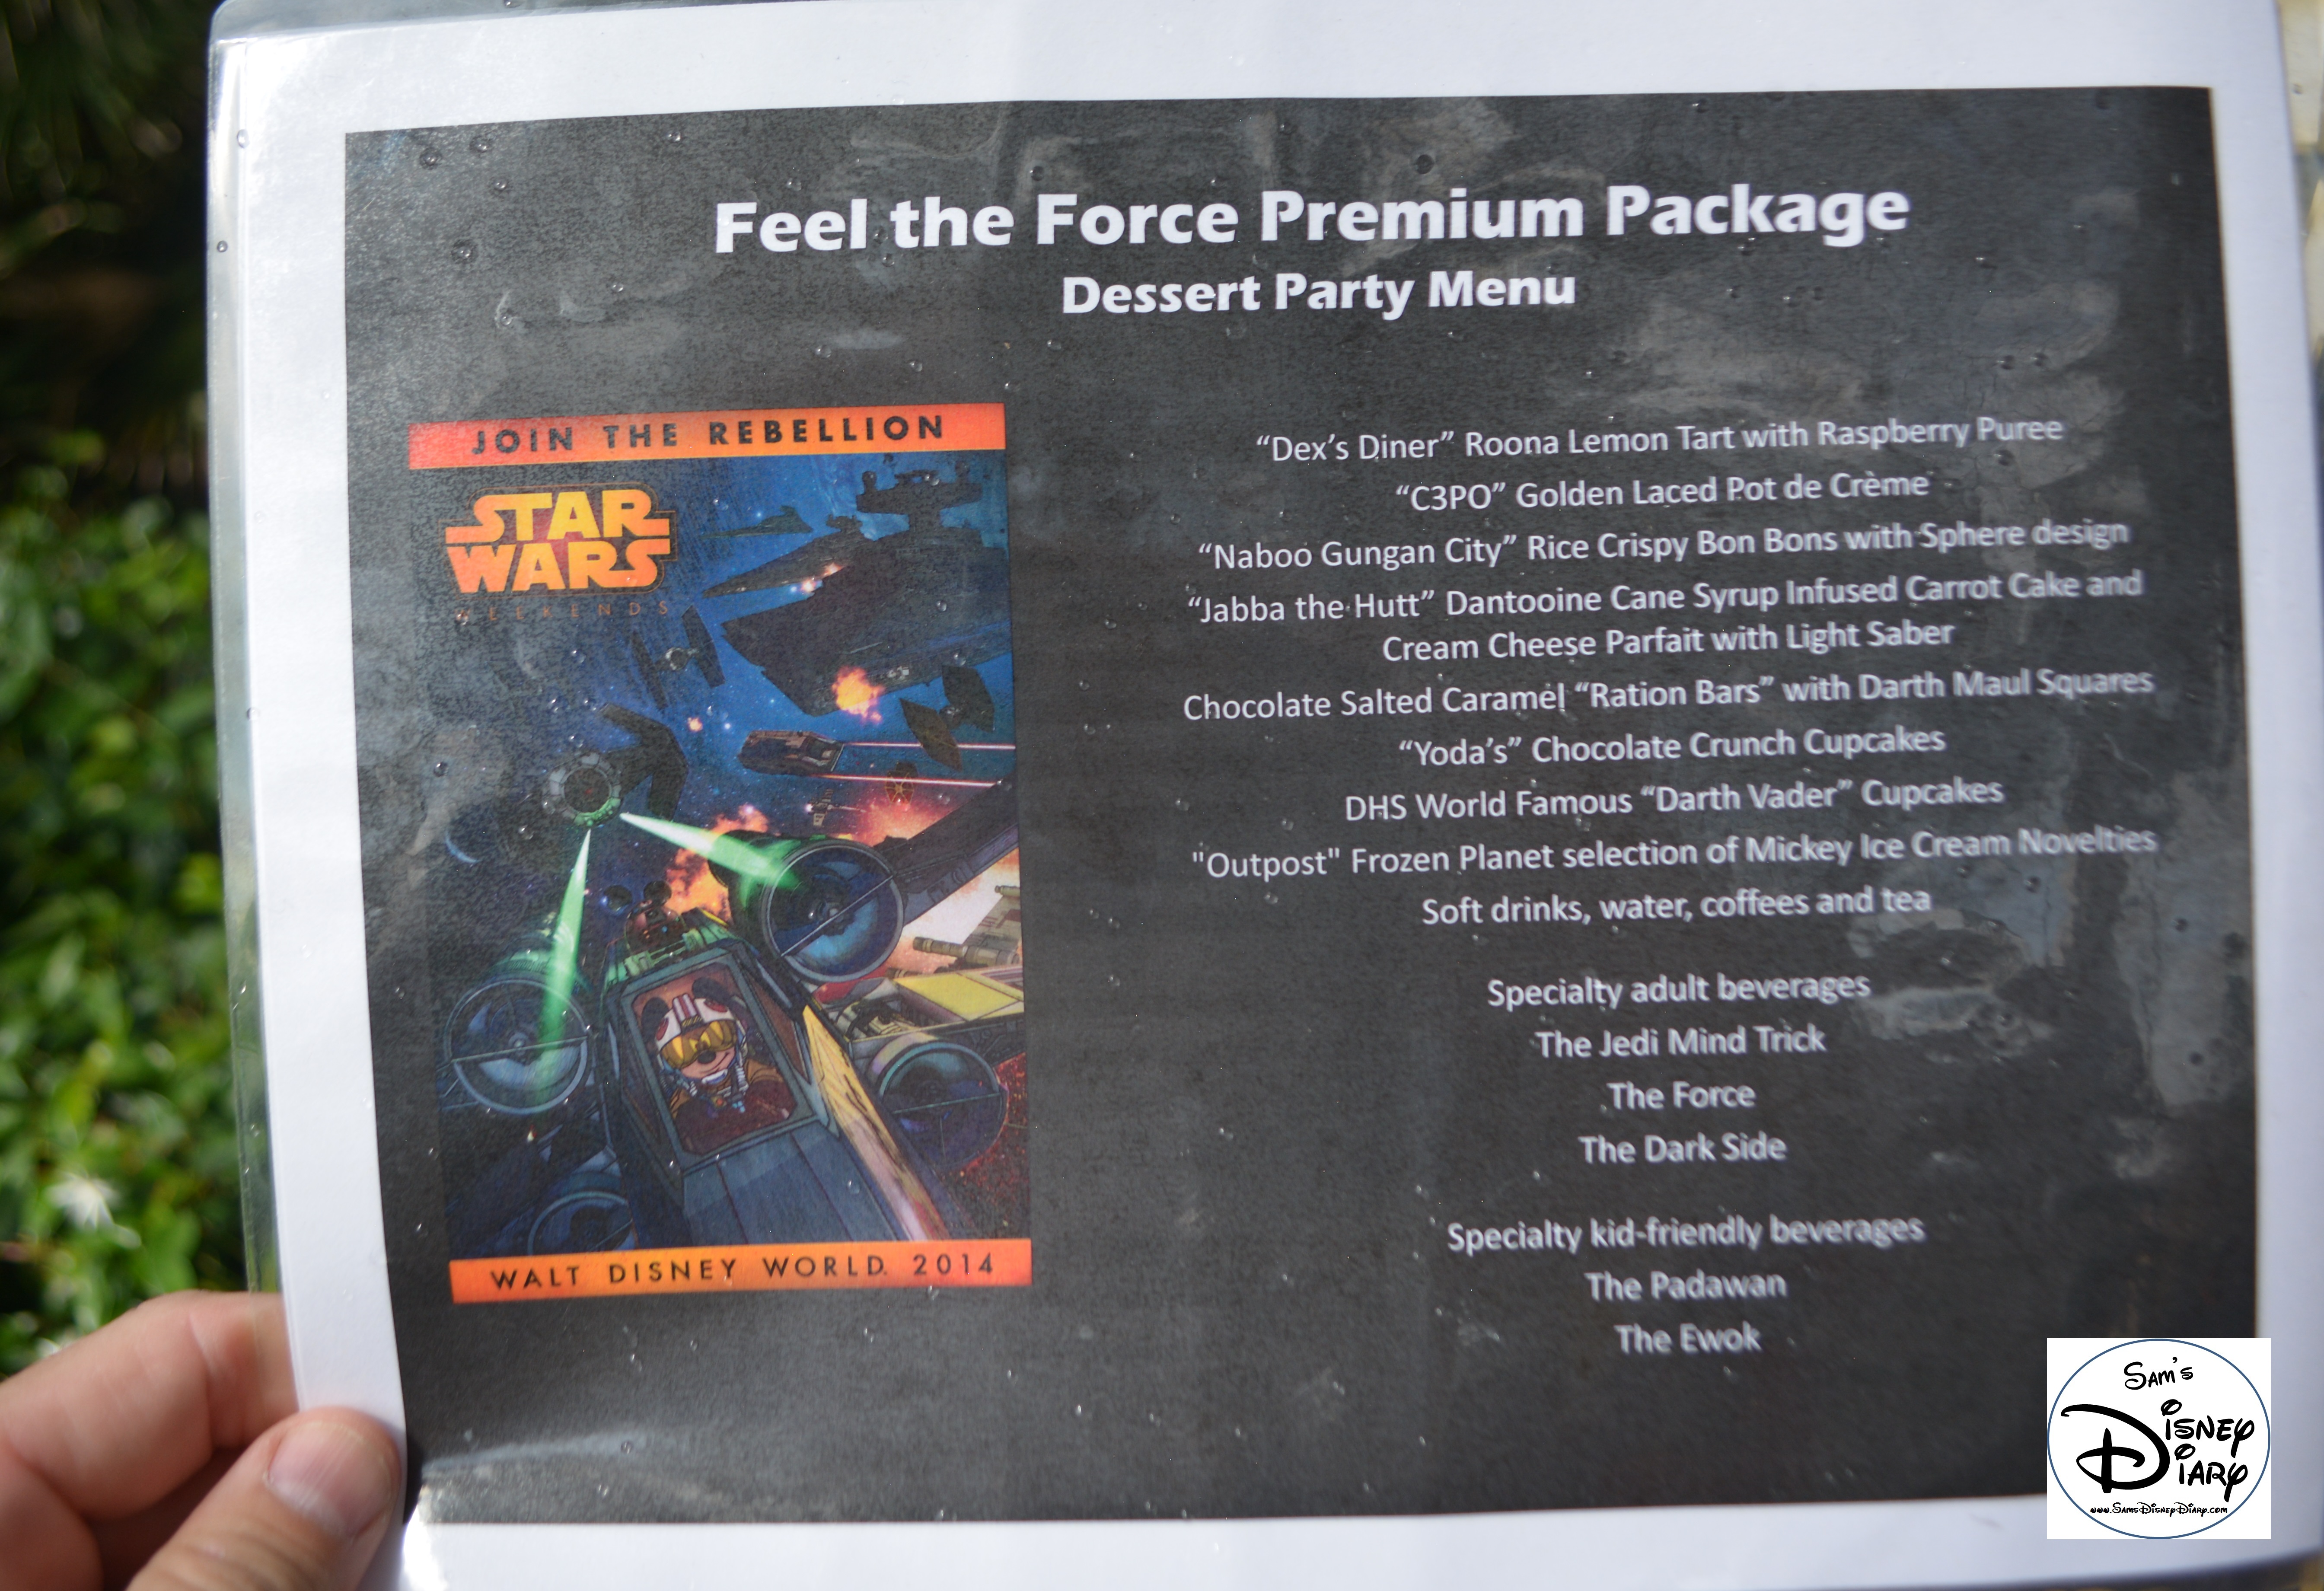 Star Wars Weekend "Fell The Force" Premium Package Dessert Menu - Yes Please!!